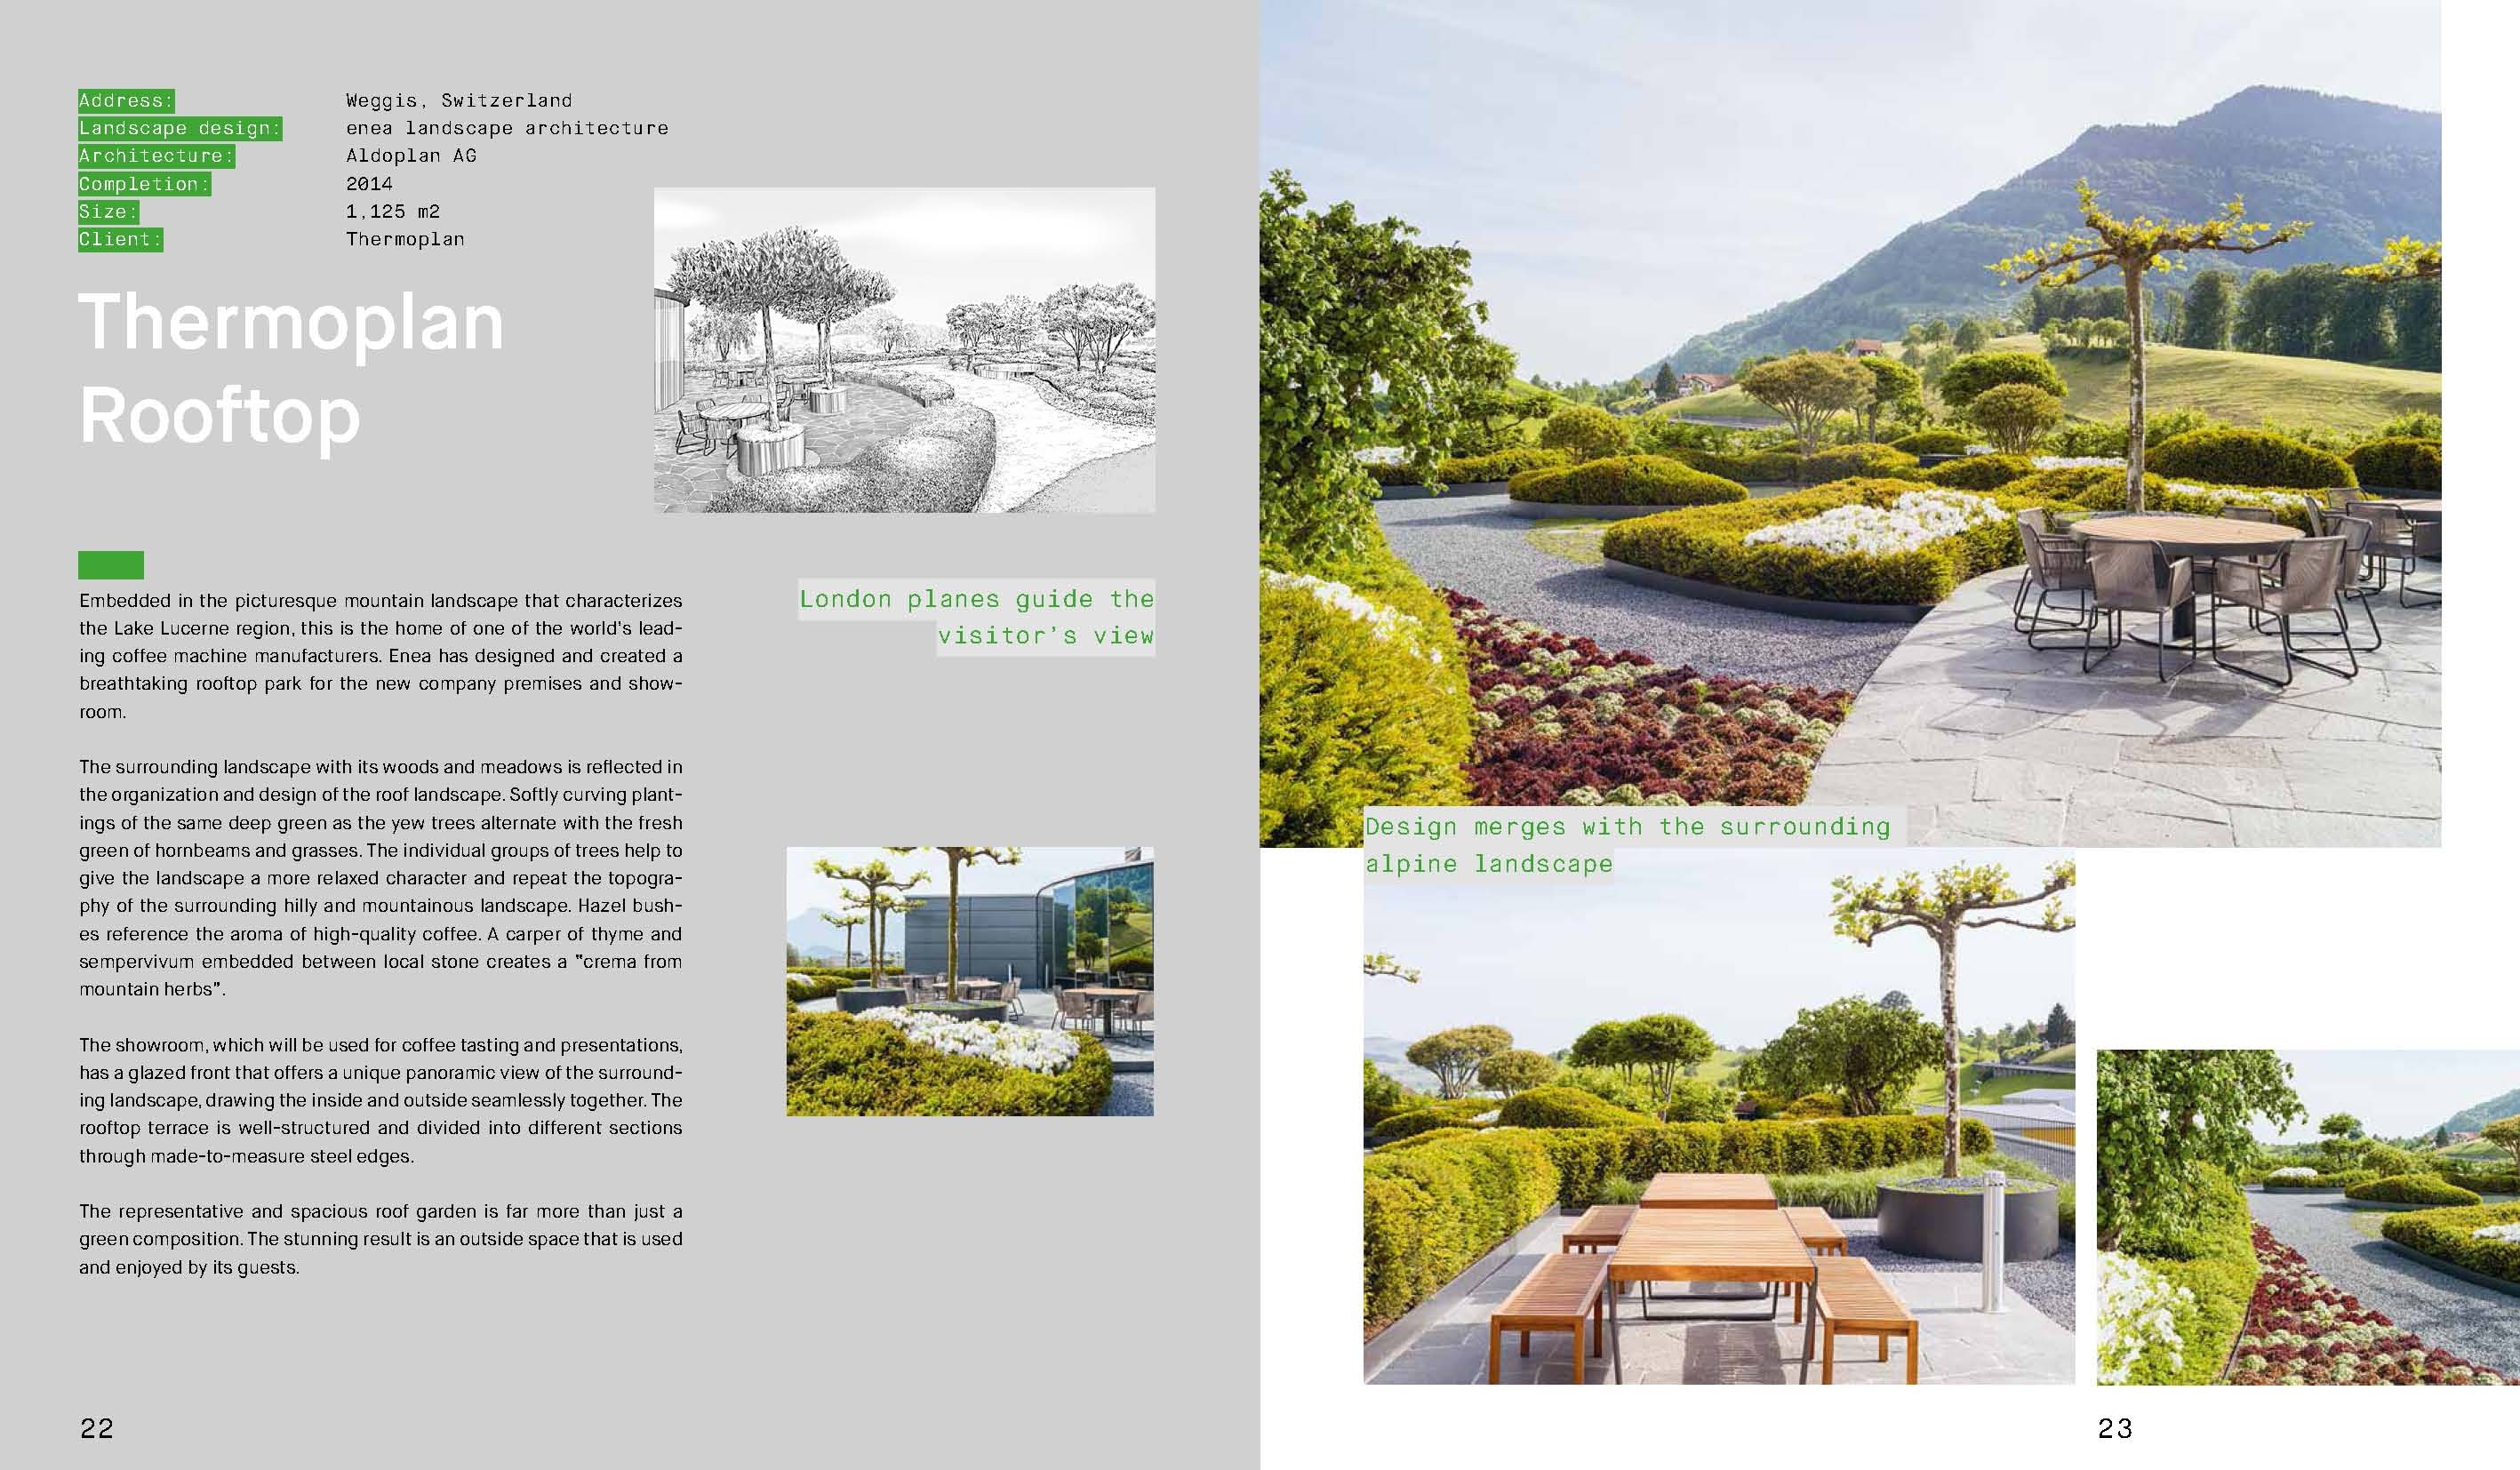 Company Gardens Landscape Architecture, Landscape Design Company